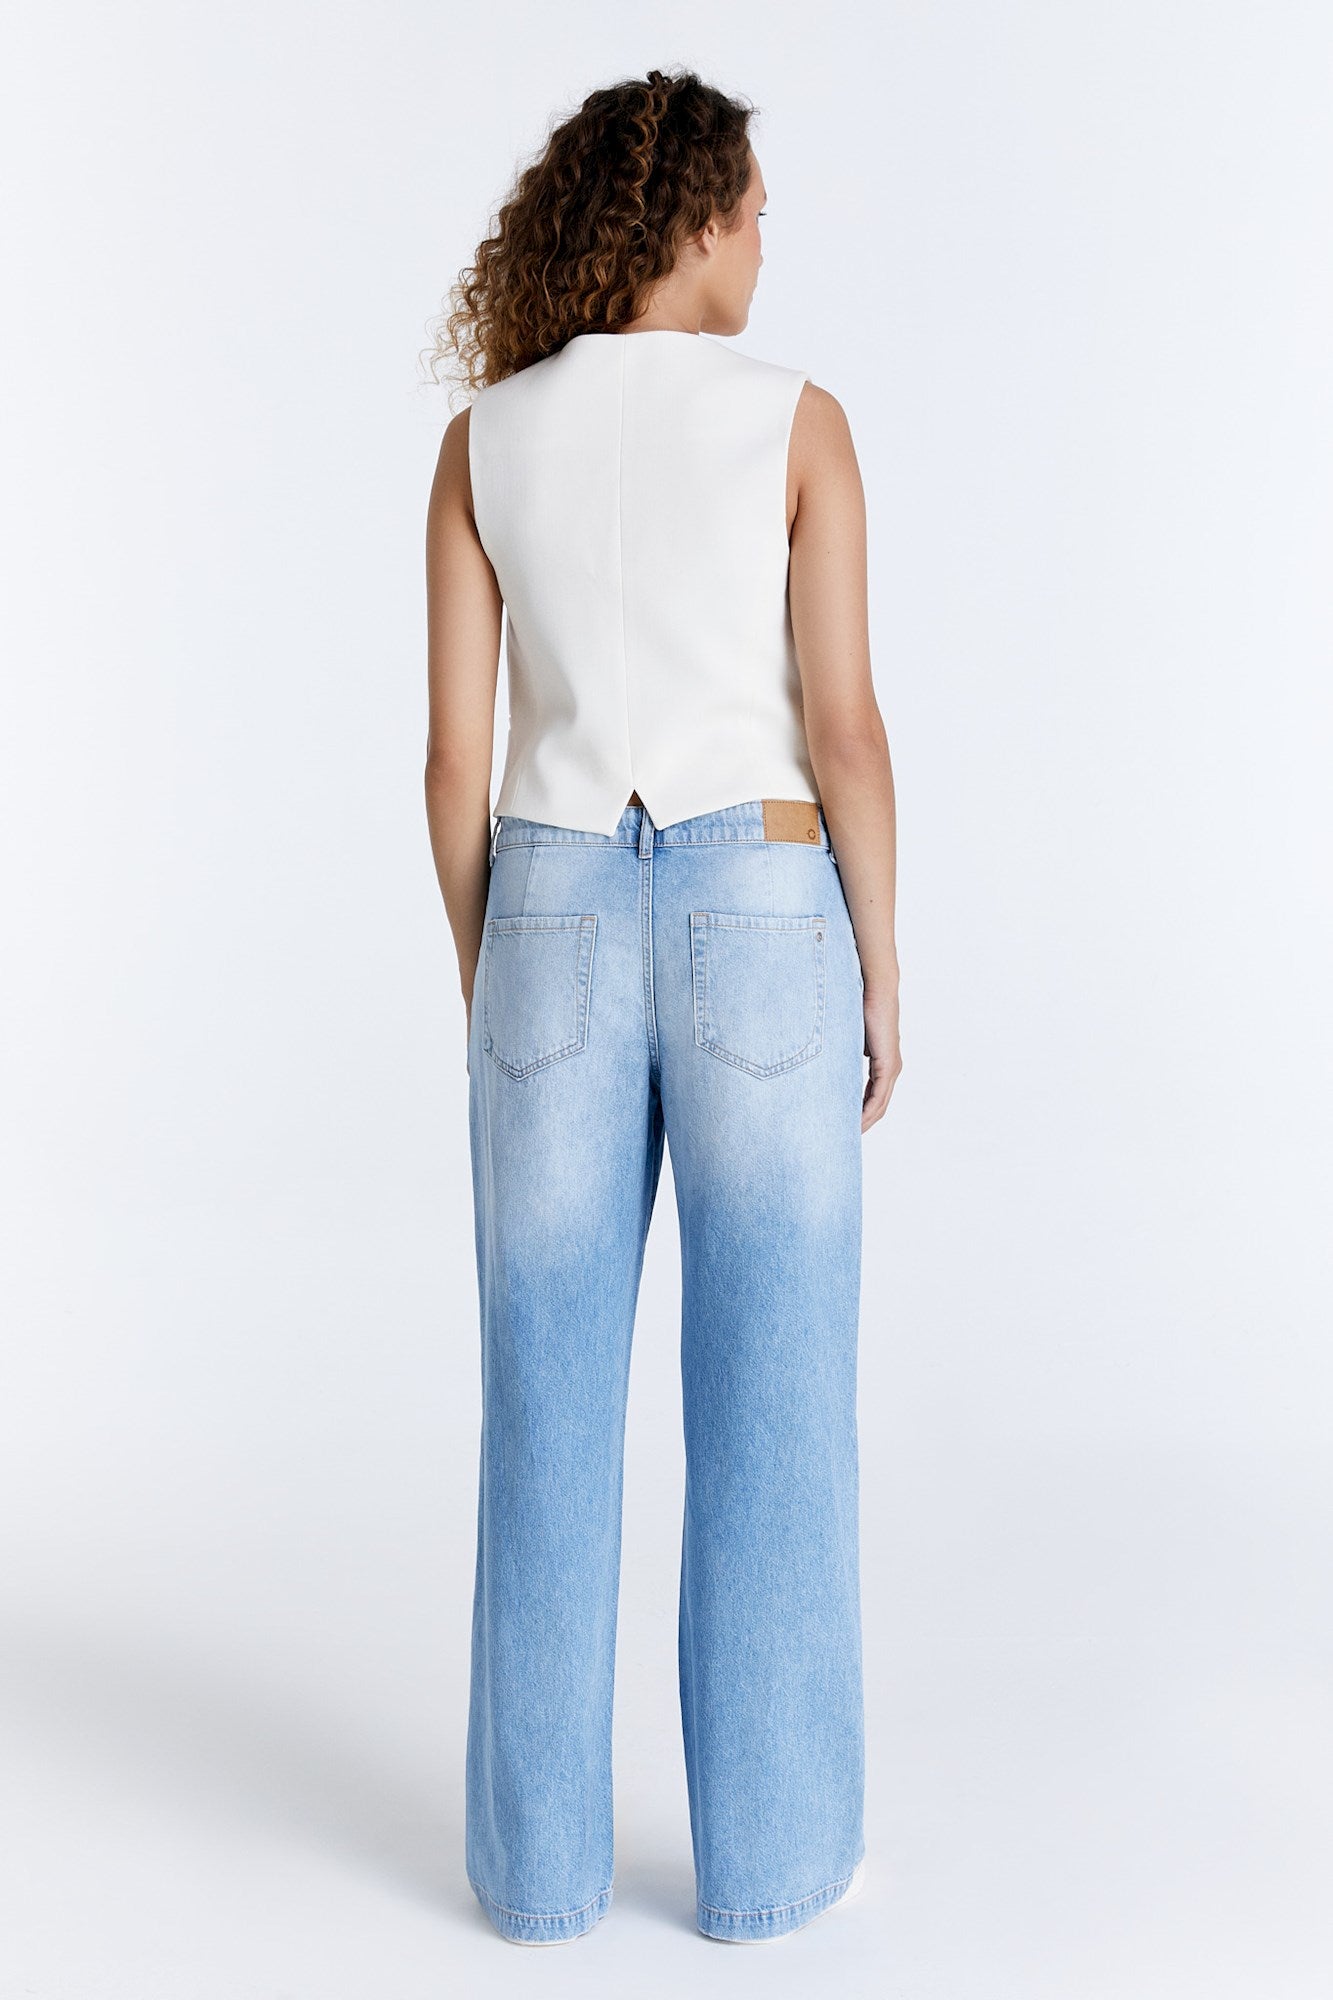 Maxine - Weite Jeans mit niedriger Taille - Hellblau